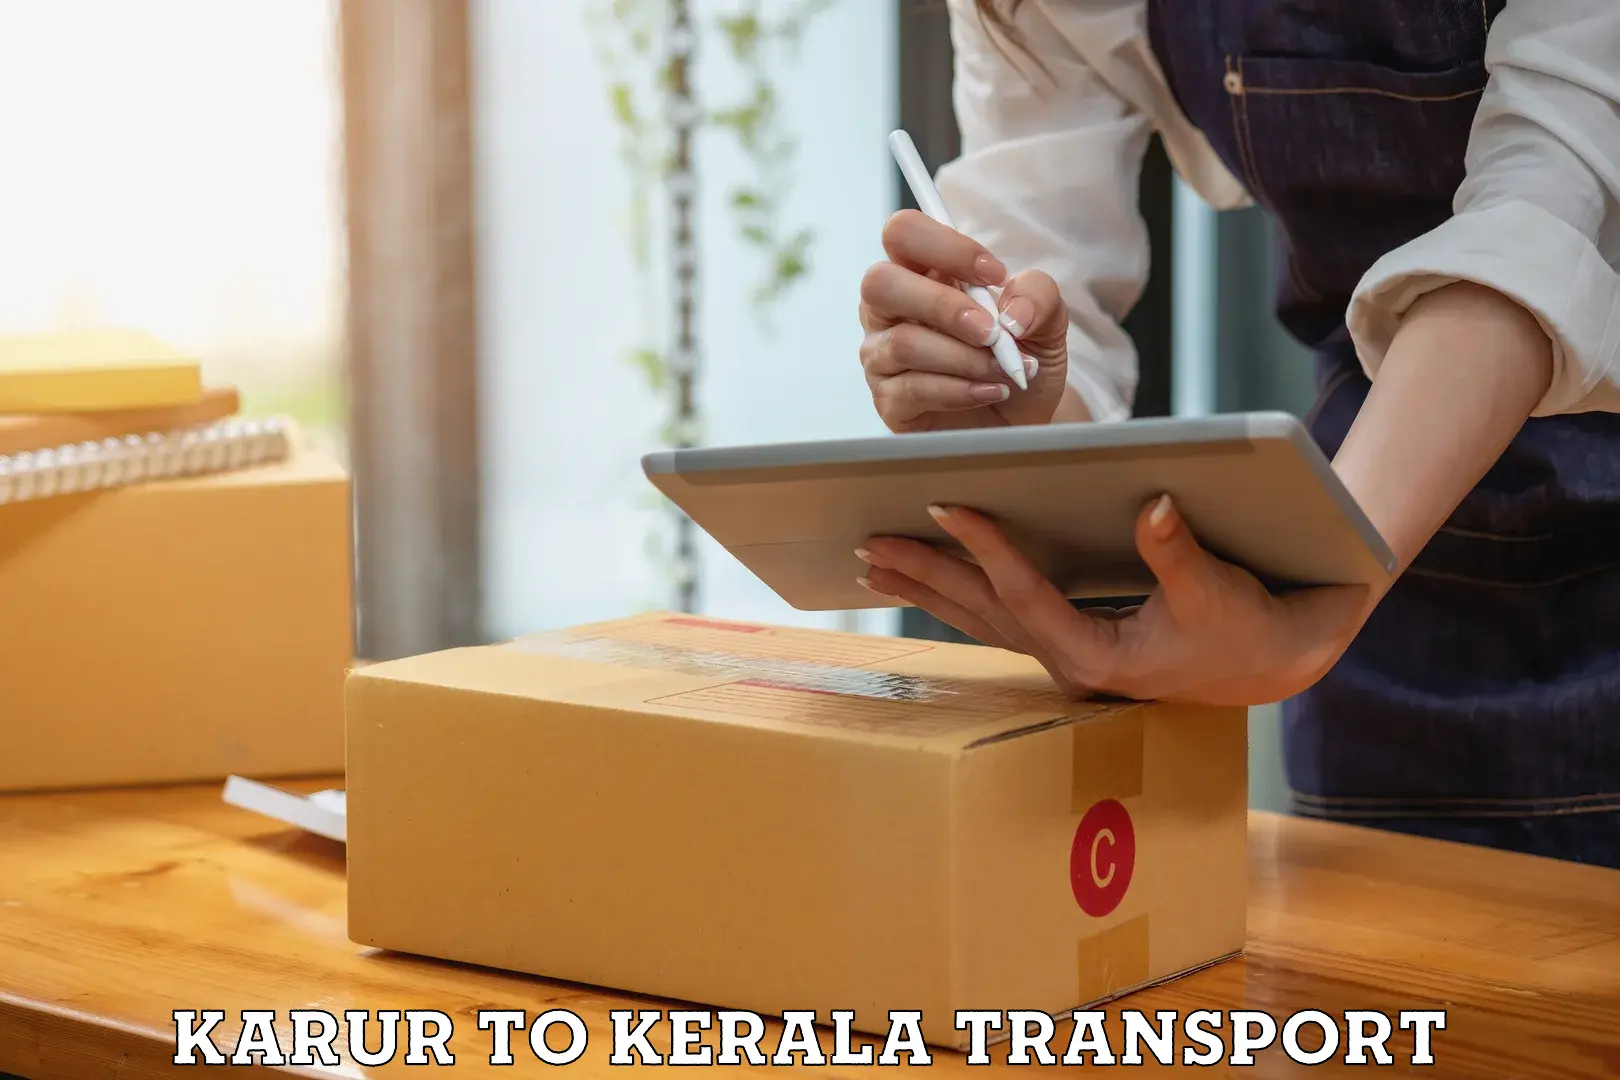 Online transport booking Karur to Kattappana